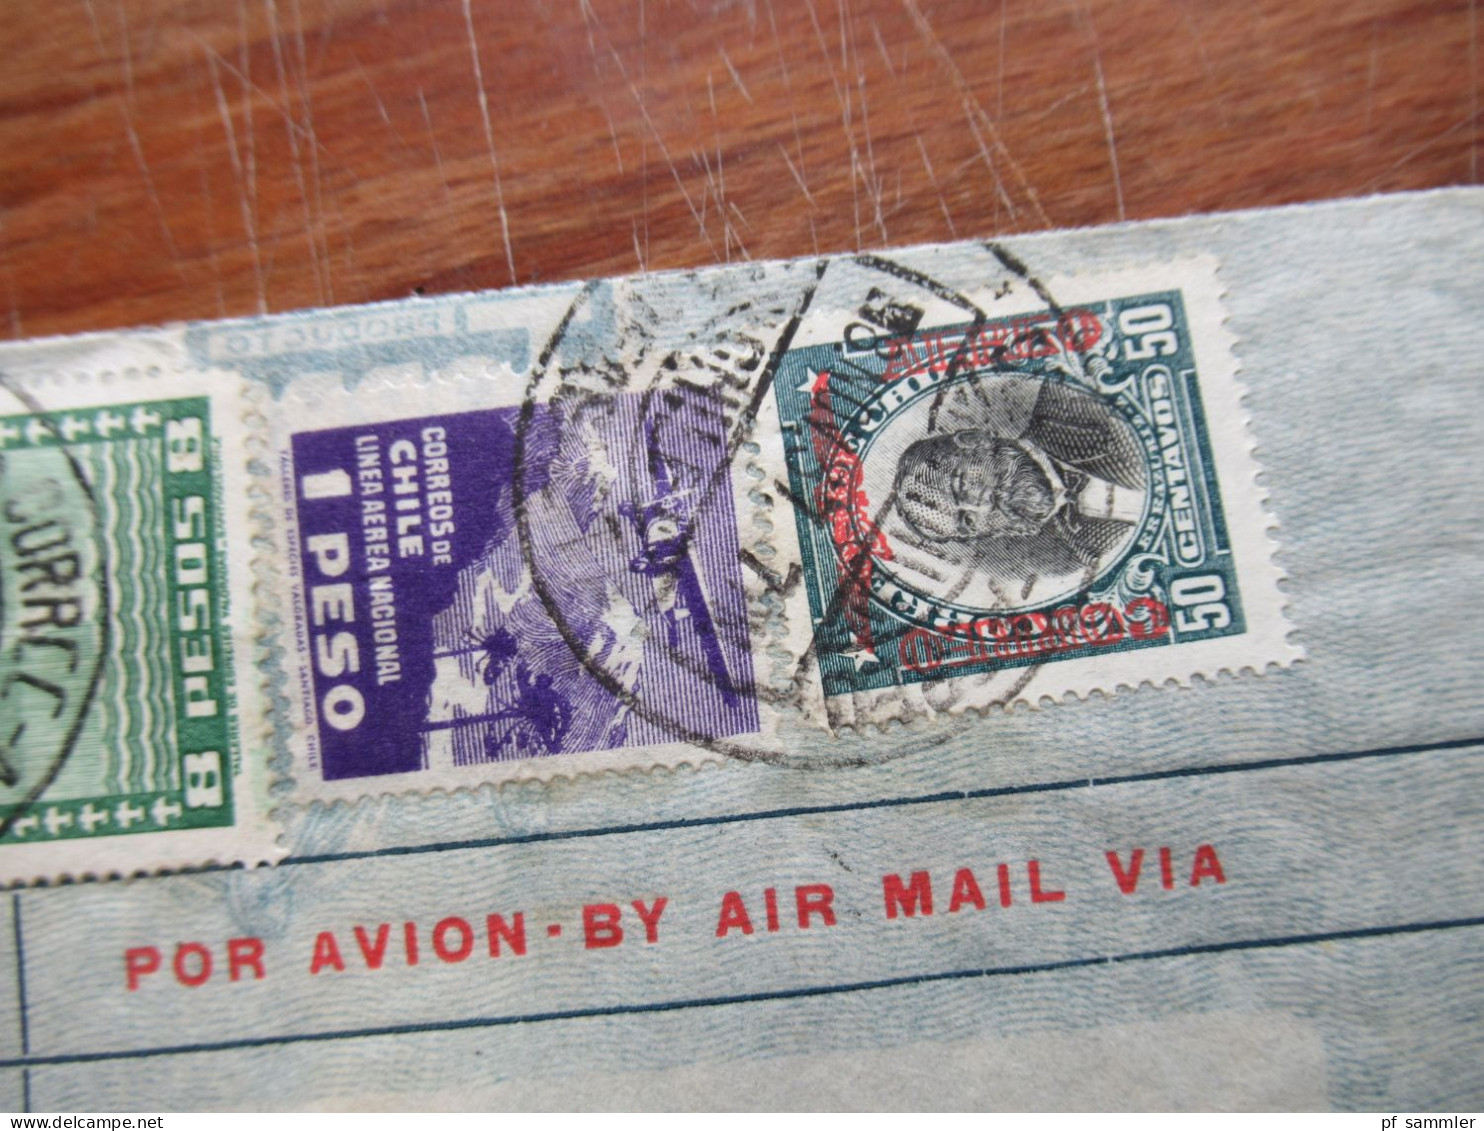 Chile 1937 Luftpost / Air Mail / Condor 7 Belege nach Hamburg gesendet! Schöne und interessante Frankaturen!